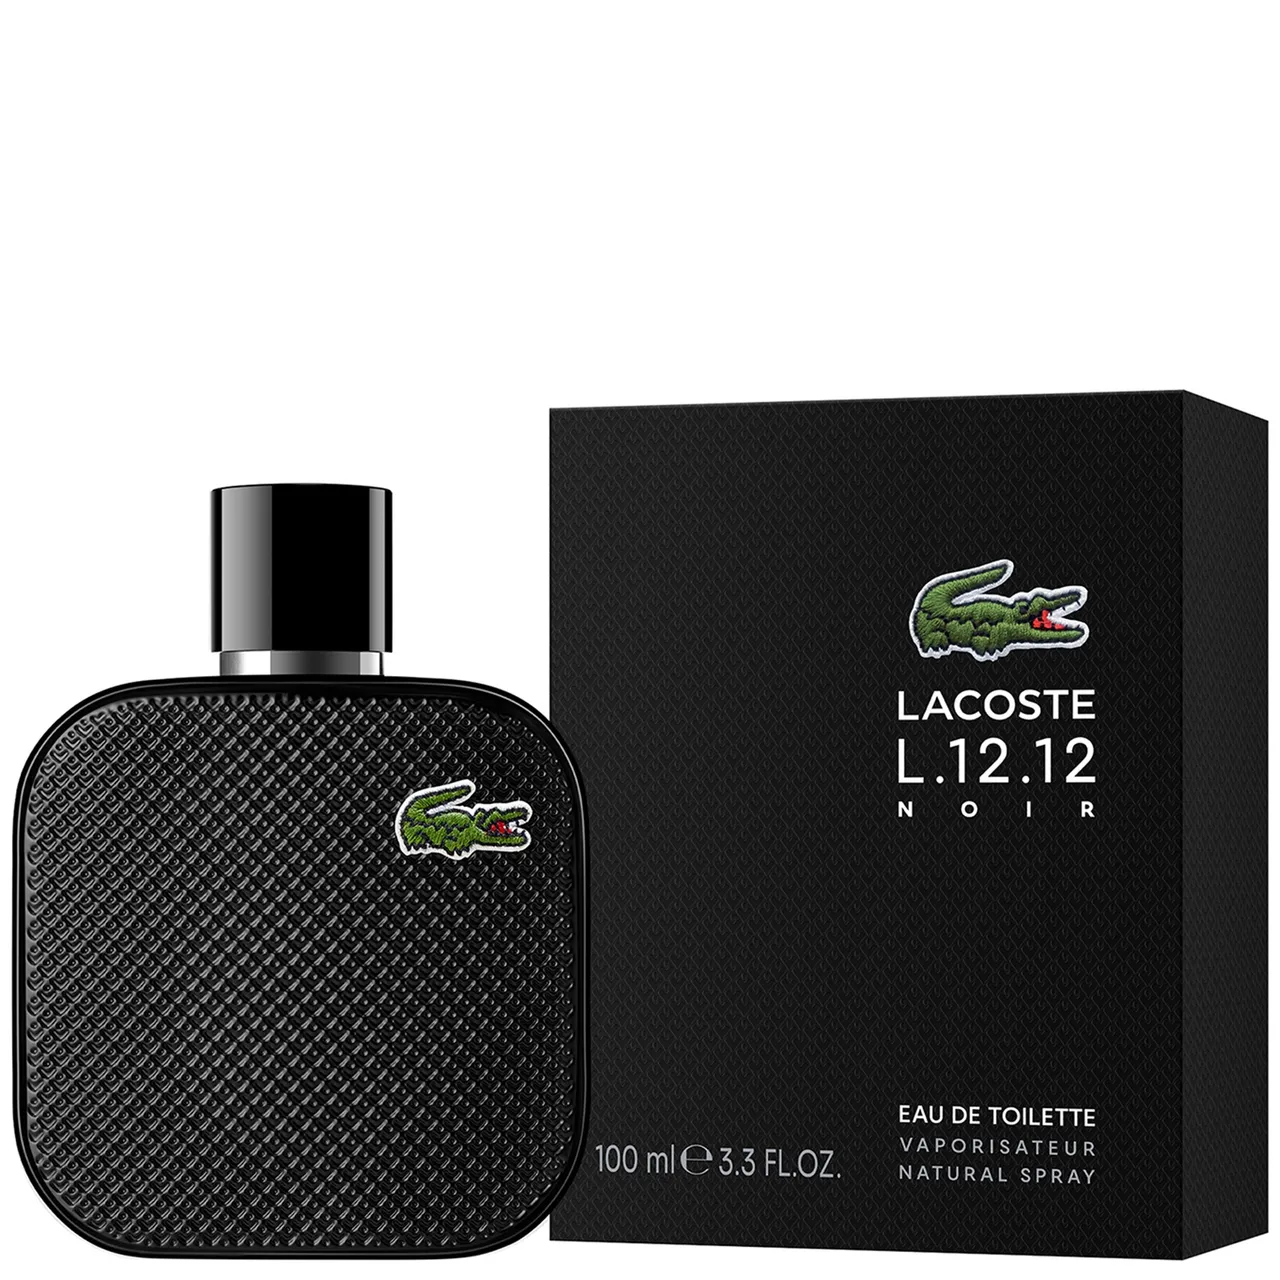 Lacoste L.12.12 Noir Eau de Toilette Spray 100ml